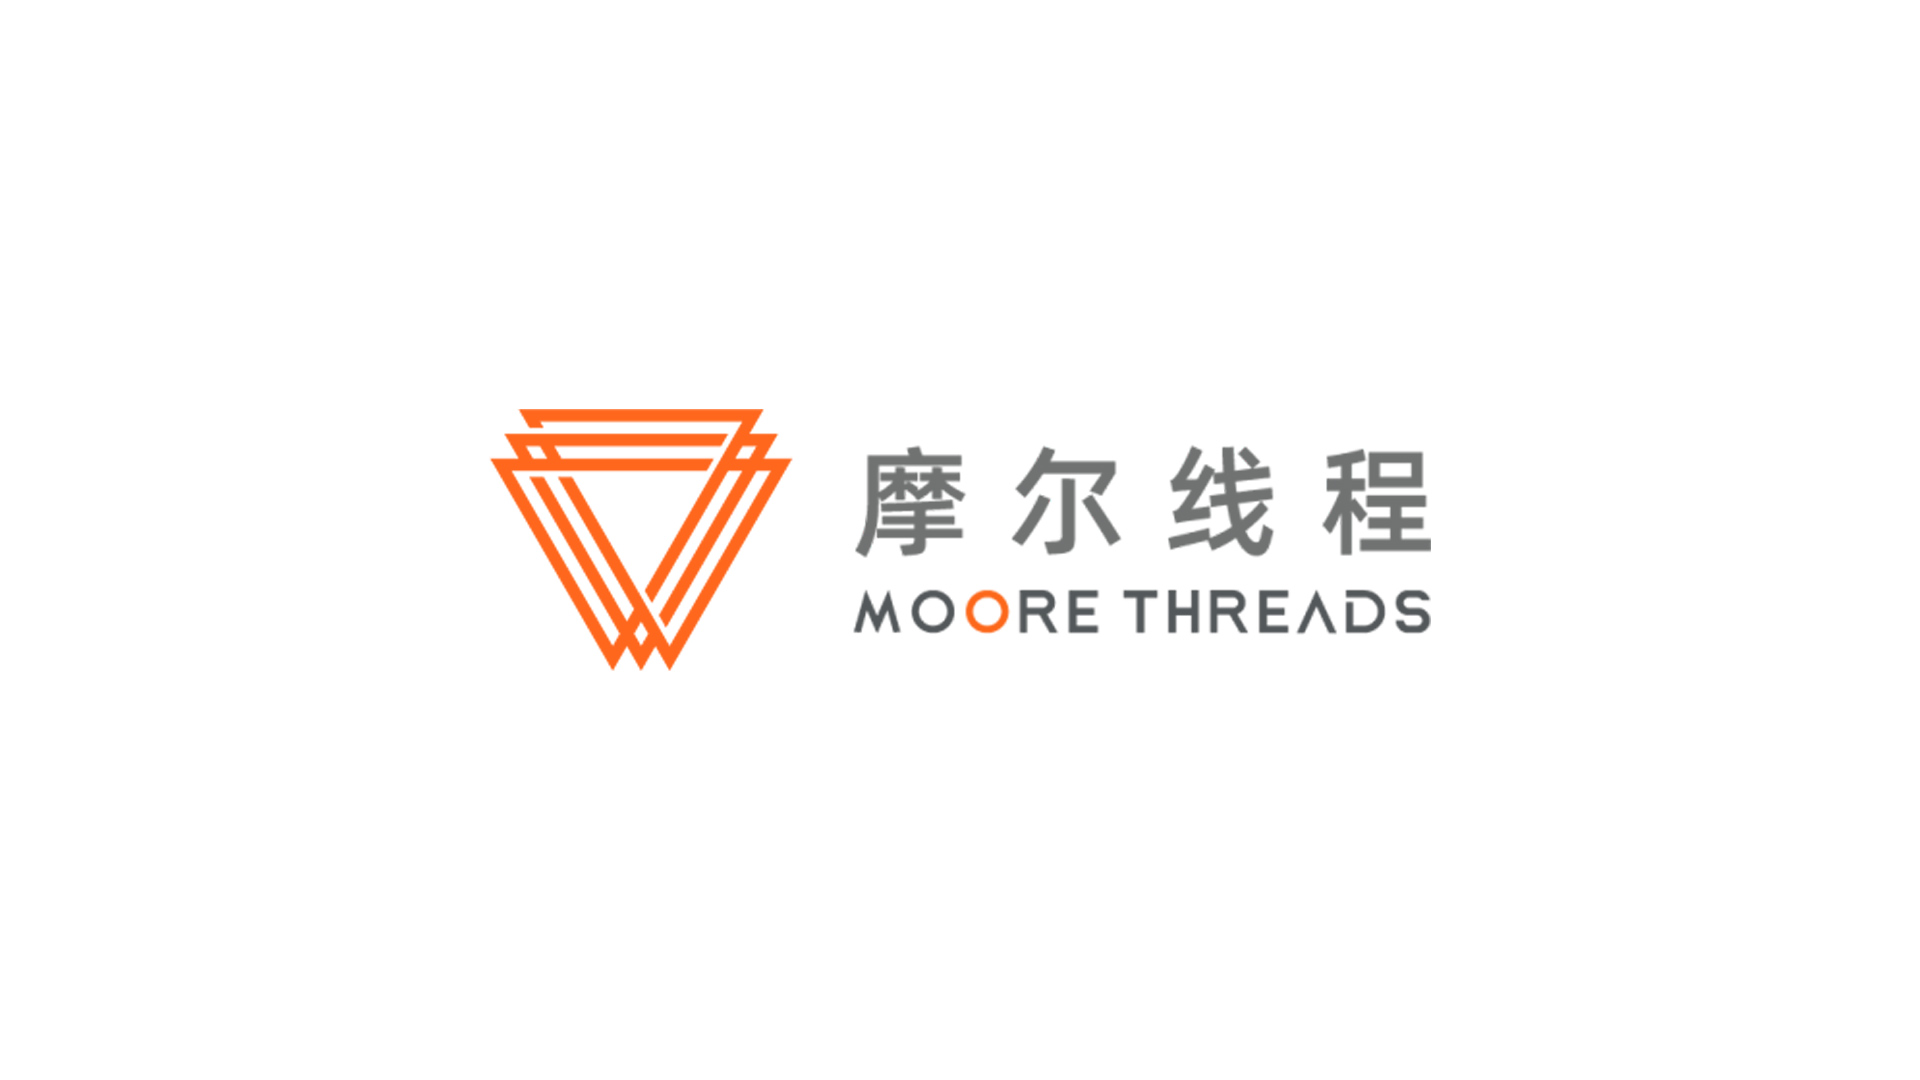 Moore Threads、制裁リスト入り後の新たな資金調達を完了